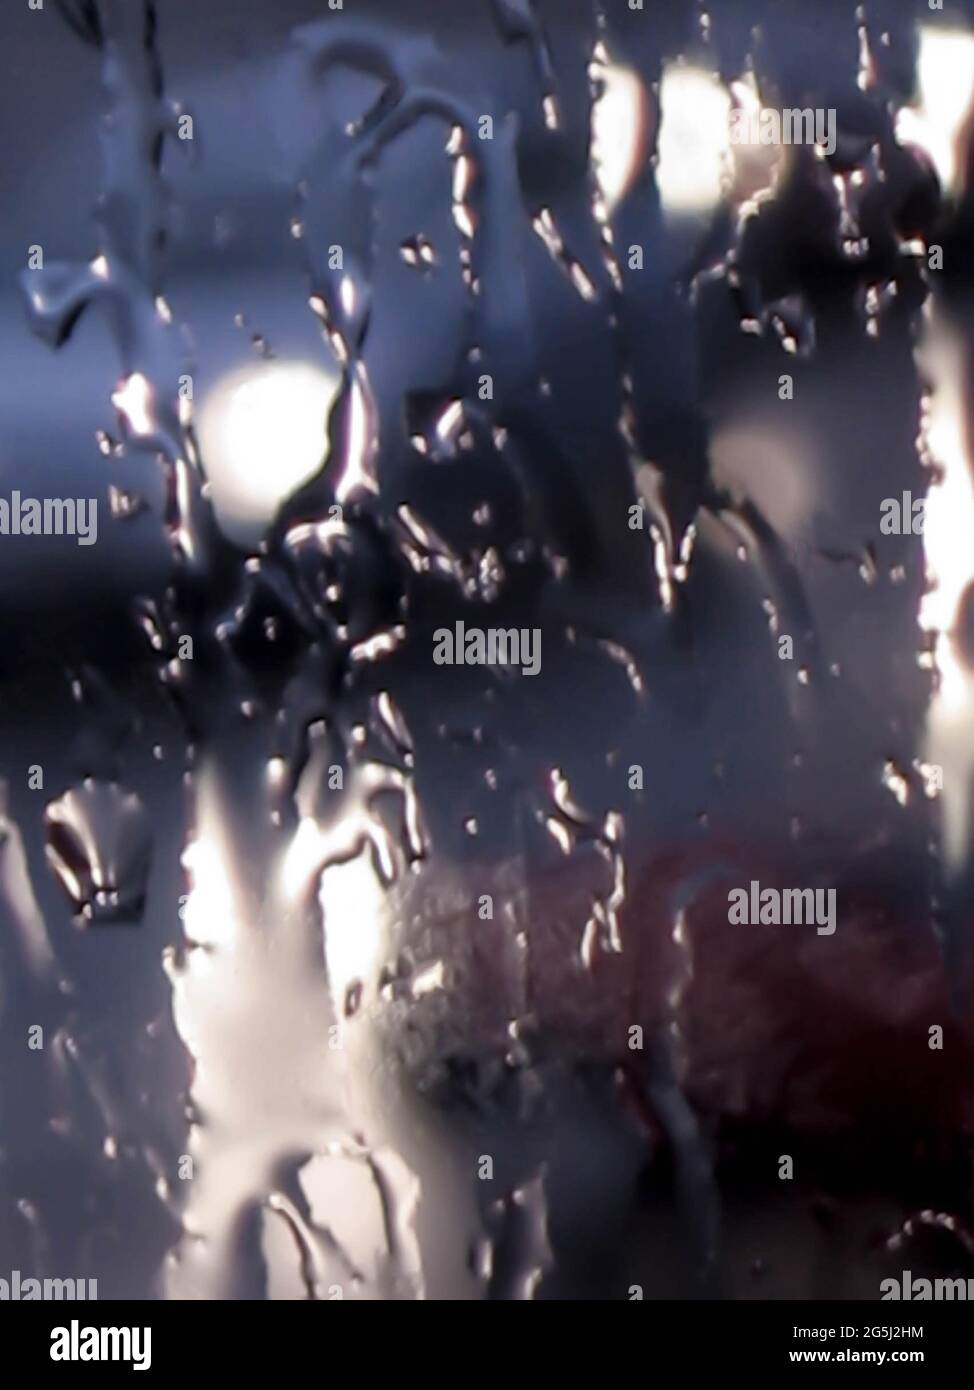 Verschwommener abstrakter, launischer Nahaufnahme-Hintergrund von Regentropfen bei schlechtem Wetter, die gegen ein nasses, transparentes Glasfenster spritzen. Stockfoto